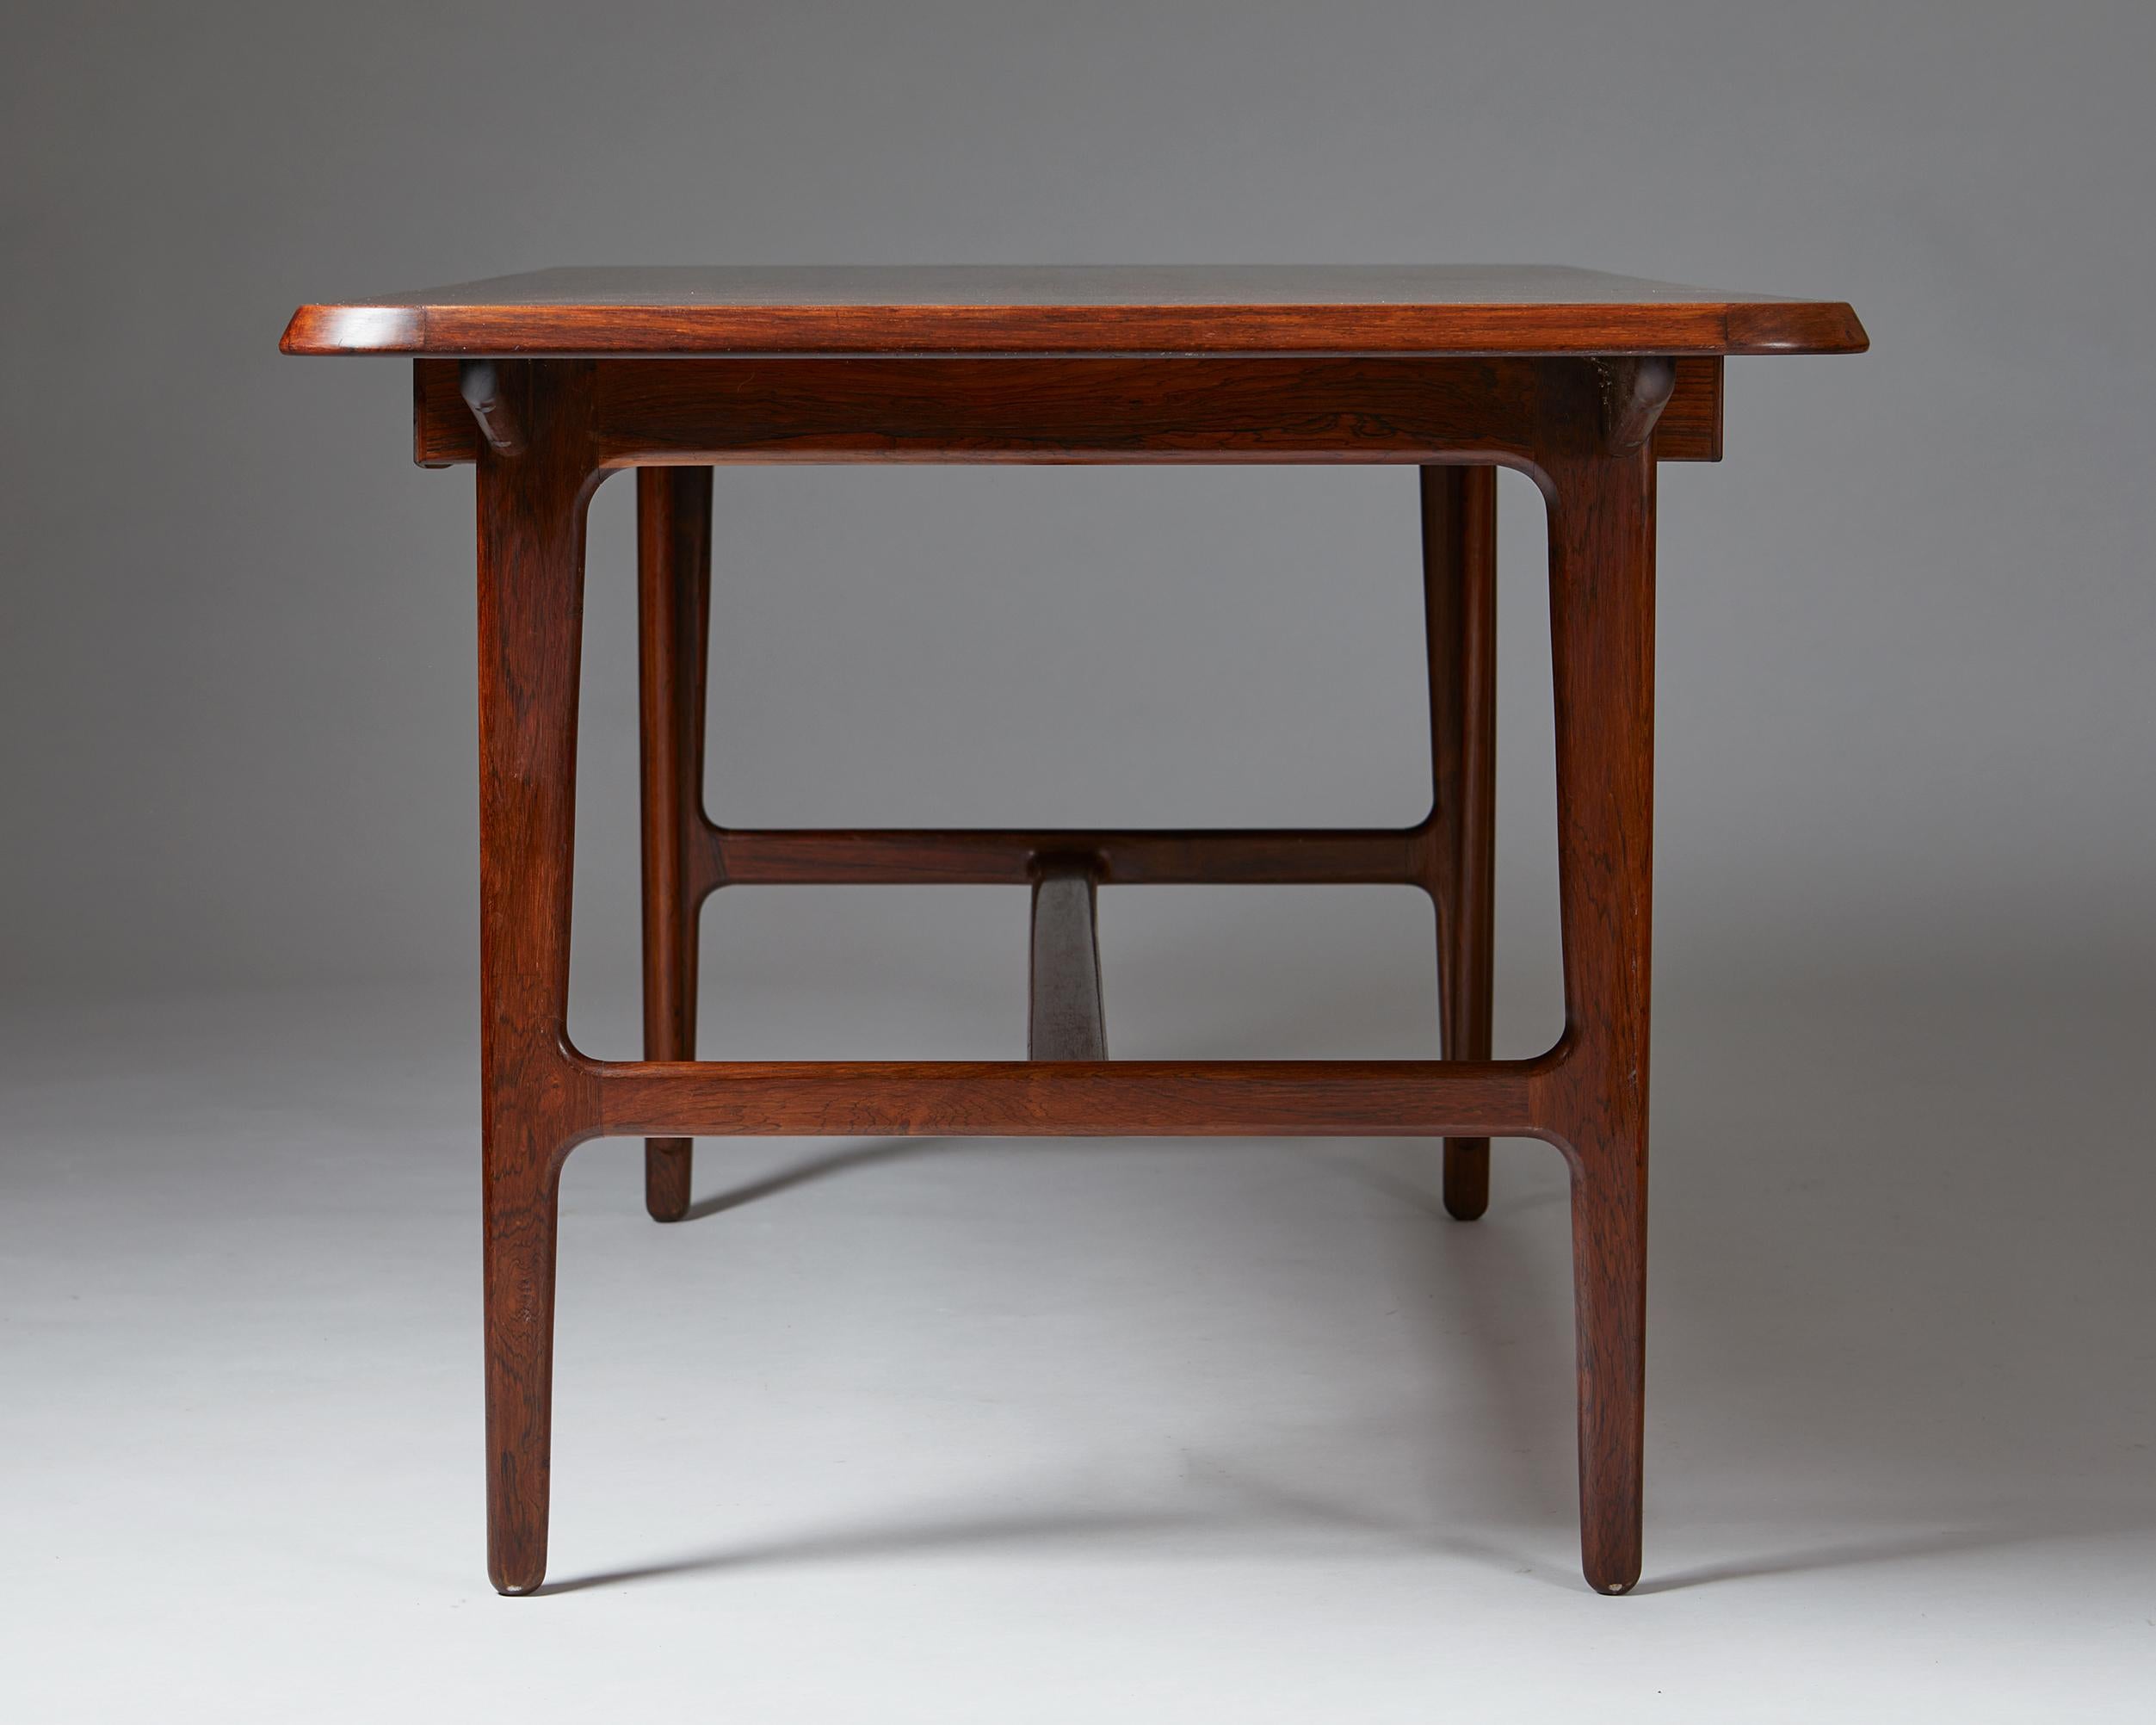 Rosewood Desk Designed by Kurt Olsen for A. Andersen & Bohm, Denmark, 1957